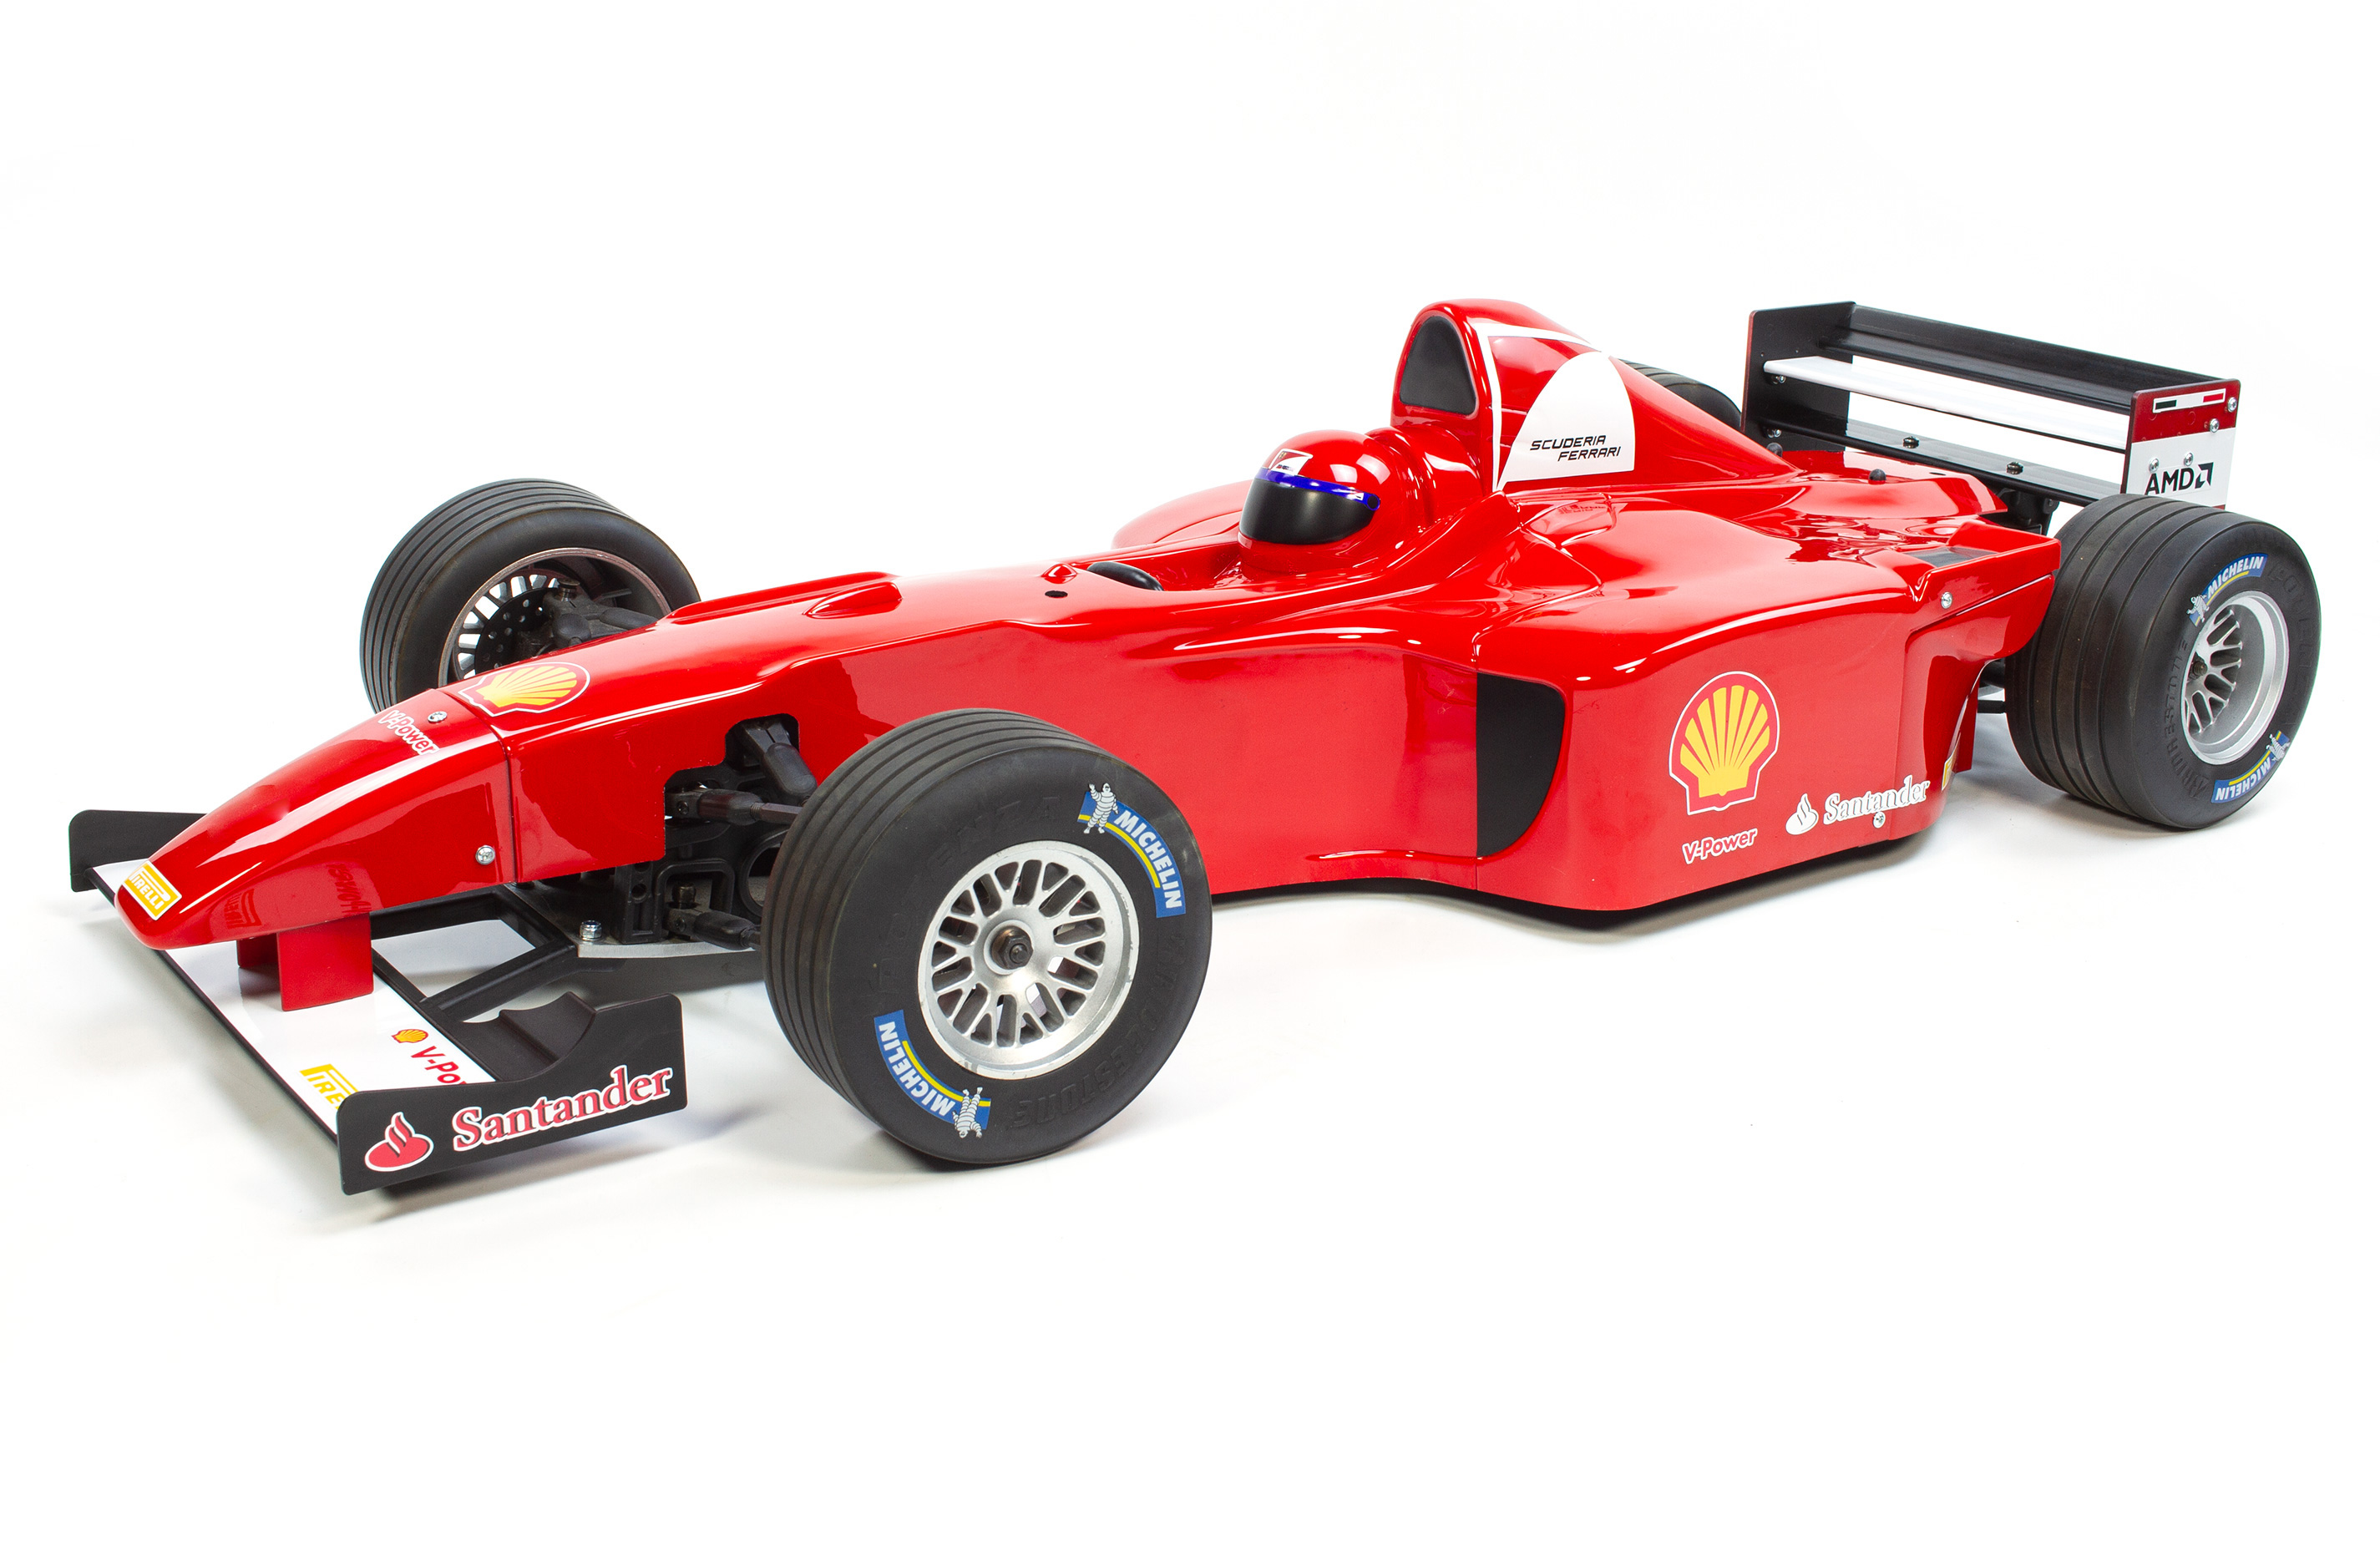 y1568 FG Formel 1 F2000 Karosserie individuelle roter F1 Lackierung inkl. Heckspoiler und beklebtem Frontspoiler Einzelstück